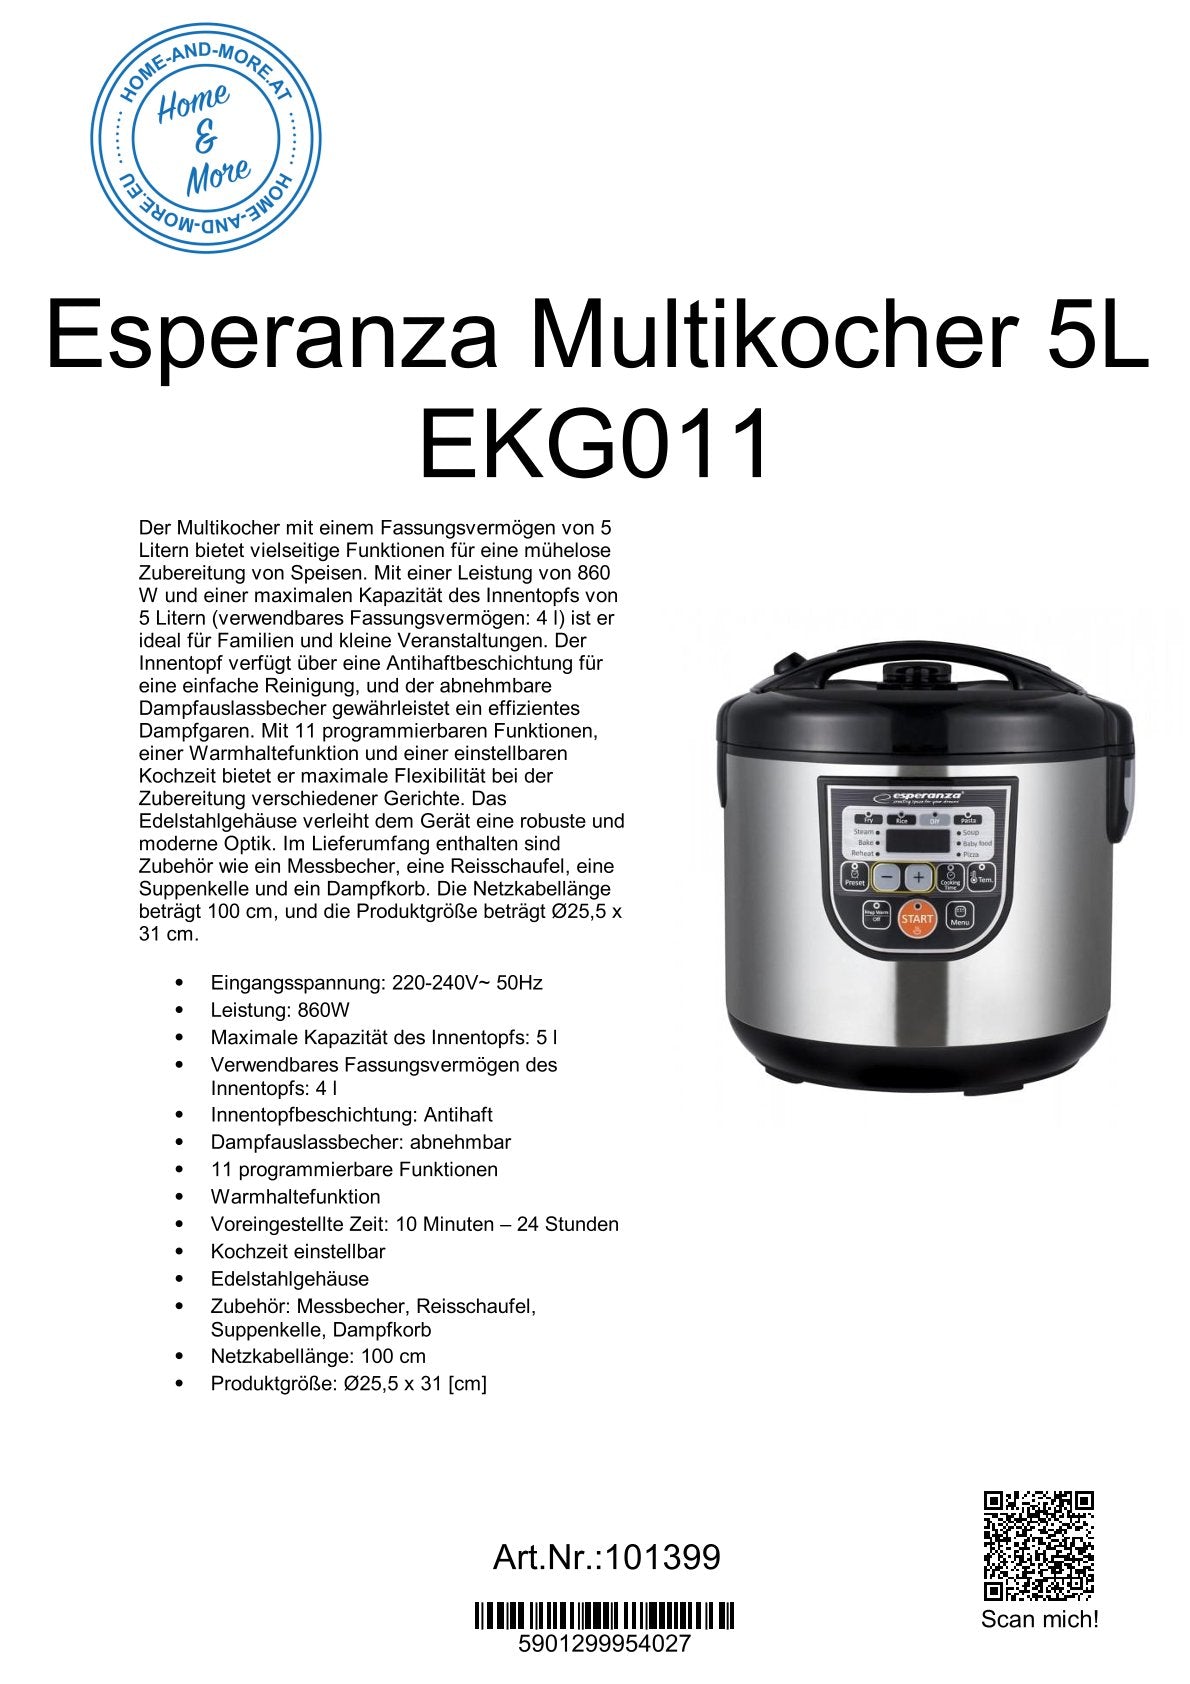 Esperanza Multikocher 5L EKG011